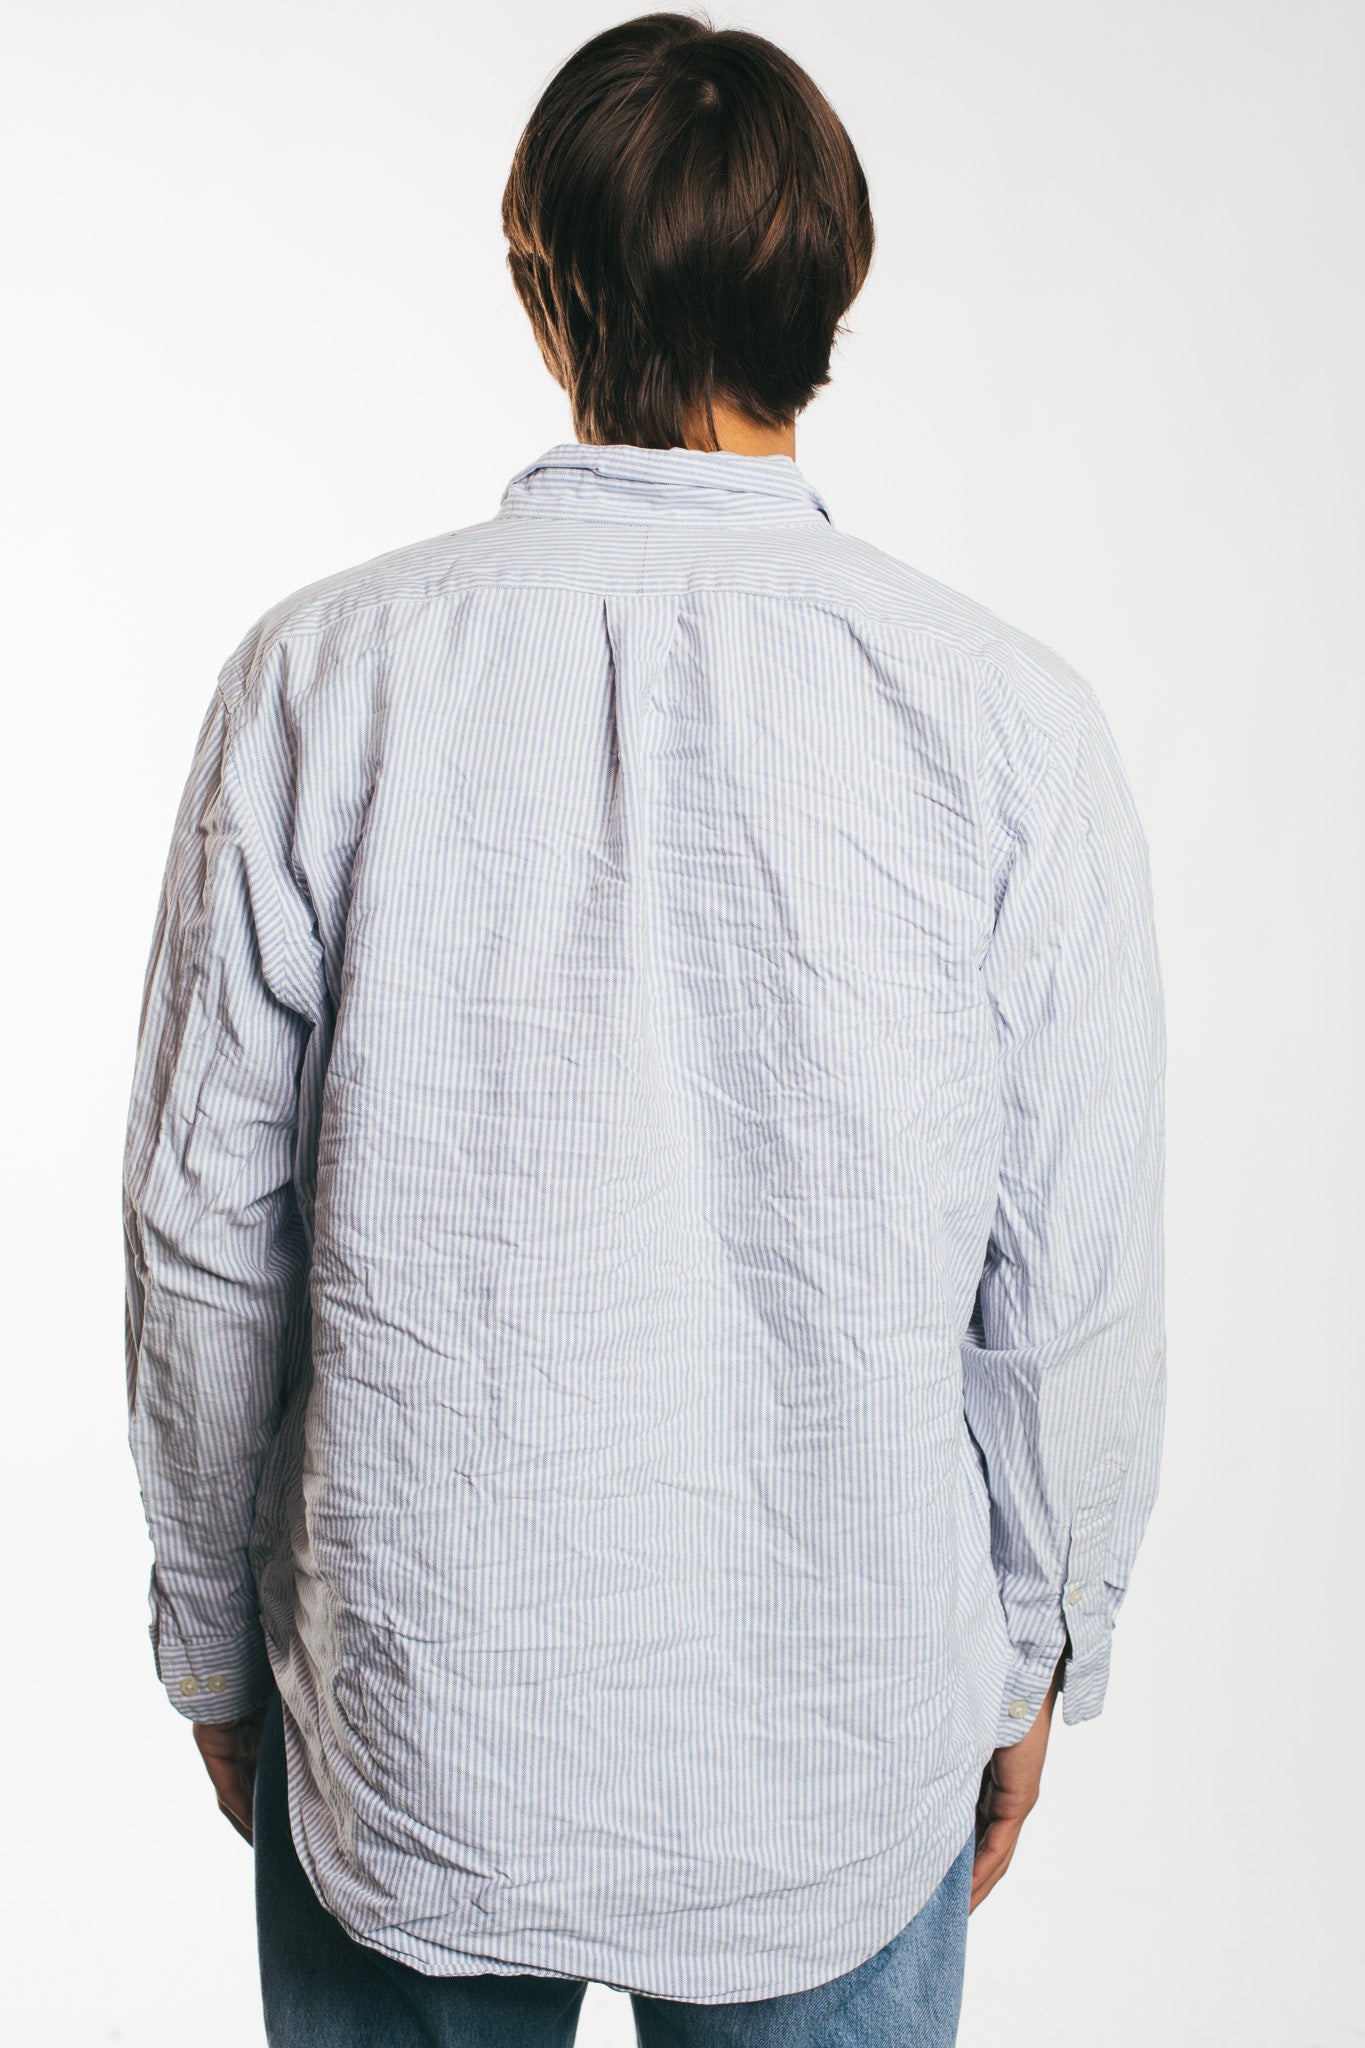 Ralph Lauren - Wit/Blauw Gestreept Shirt